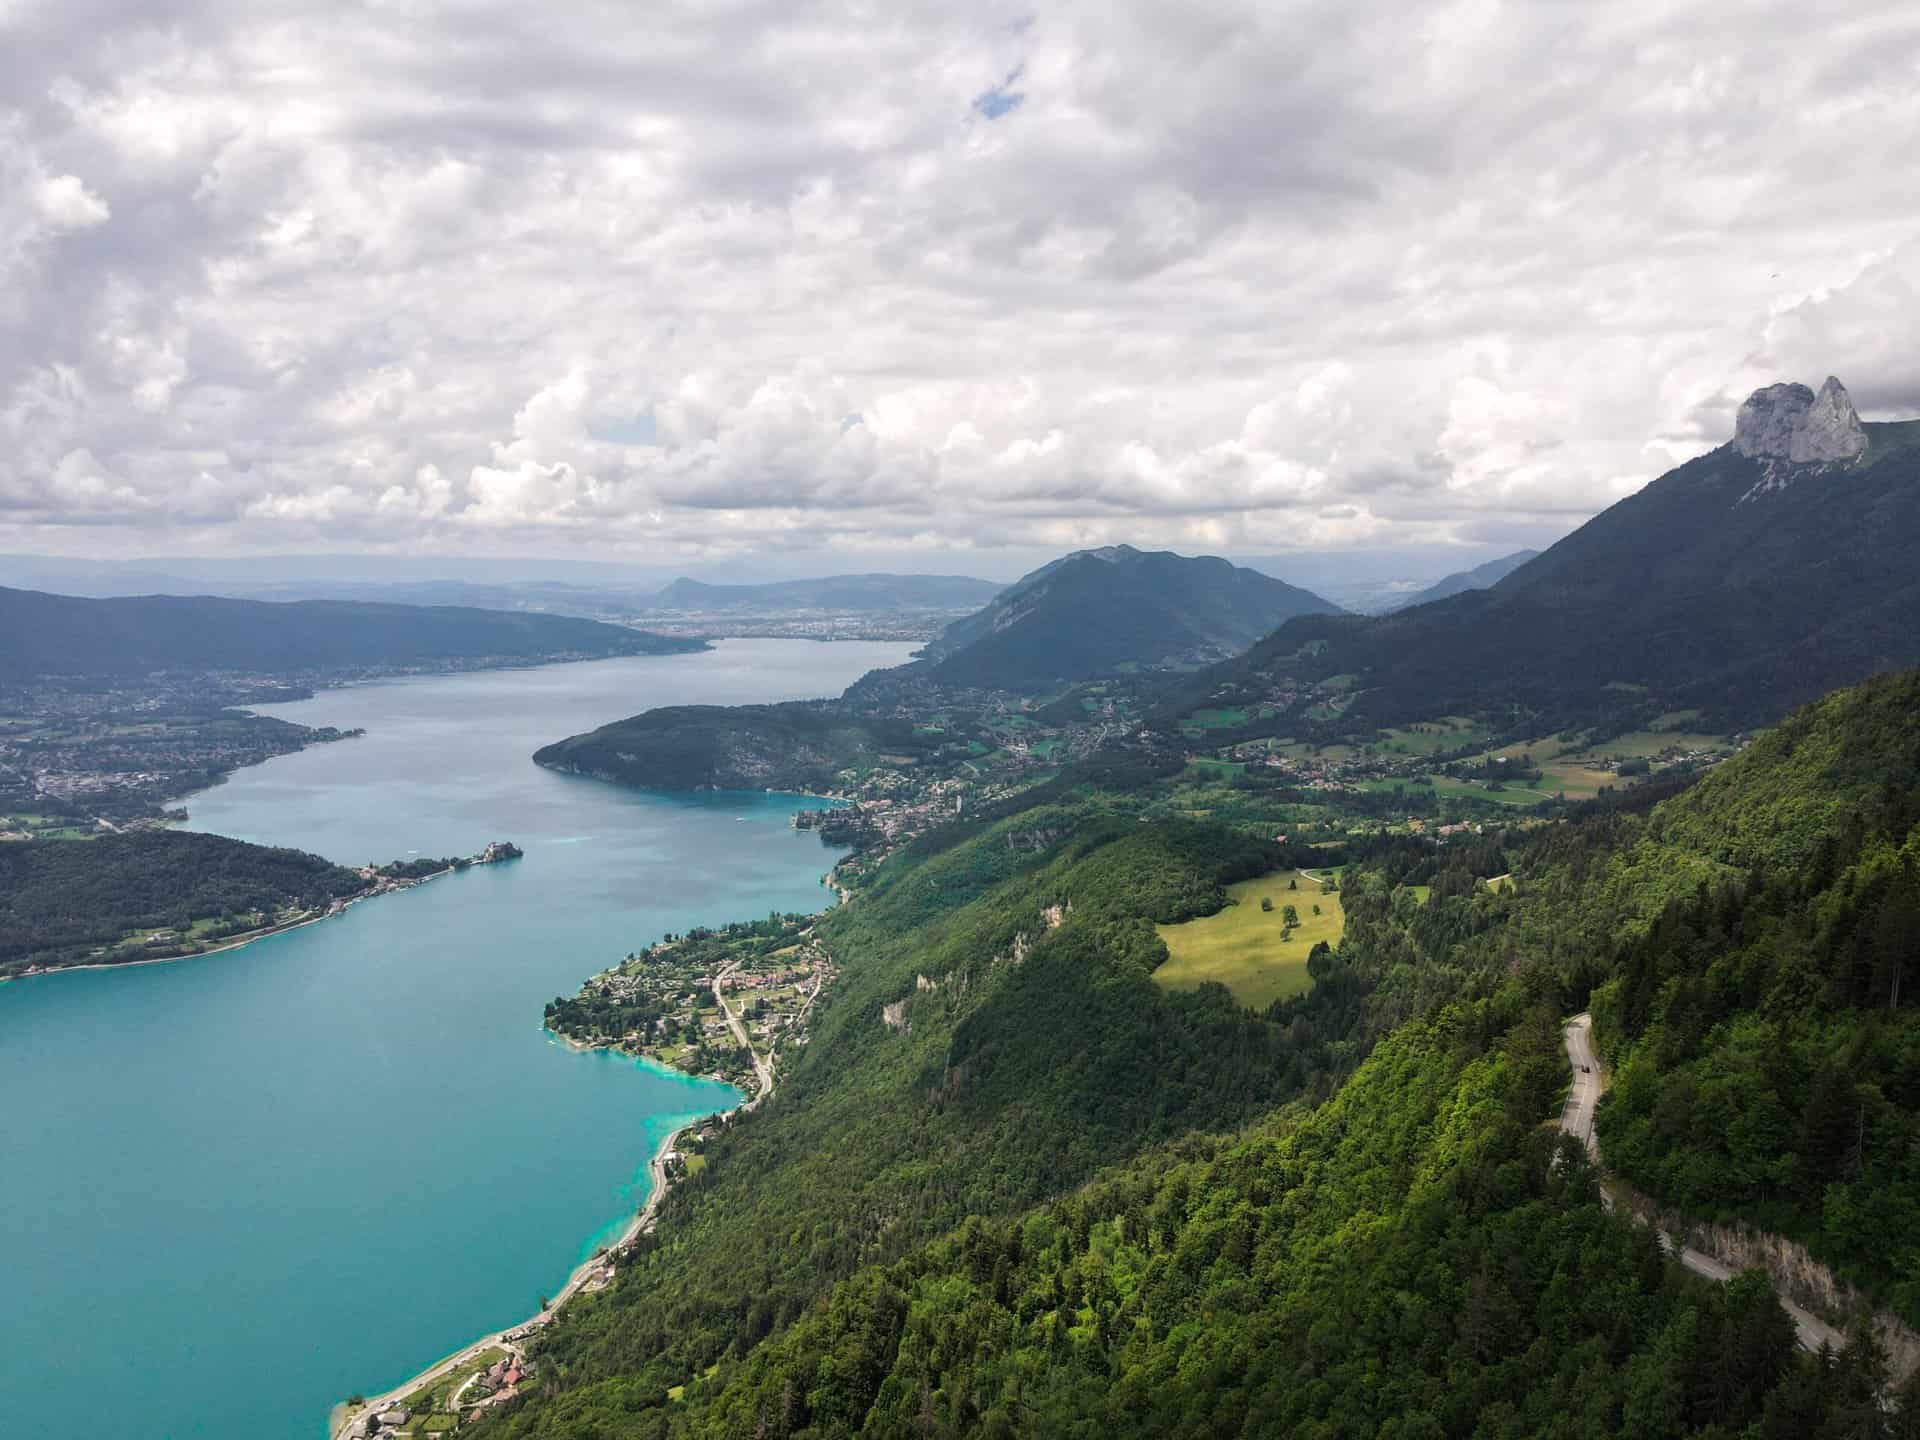 Vue d'ensemble sur le lac d'Annecy et les montagnes qui viennent se jeter dans ses eaux.